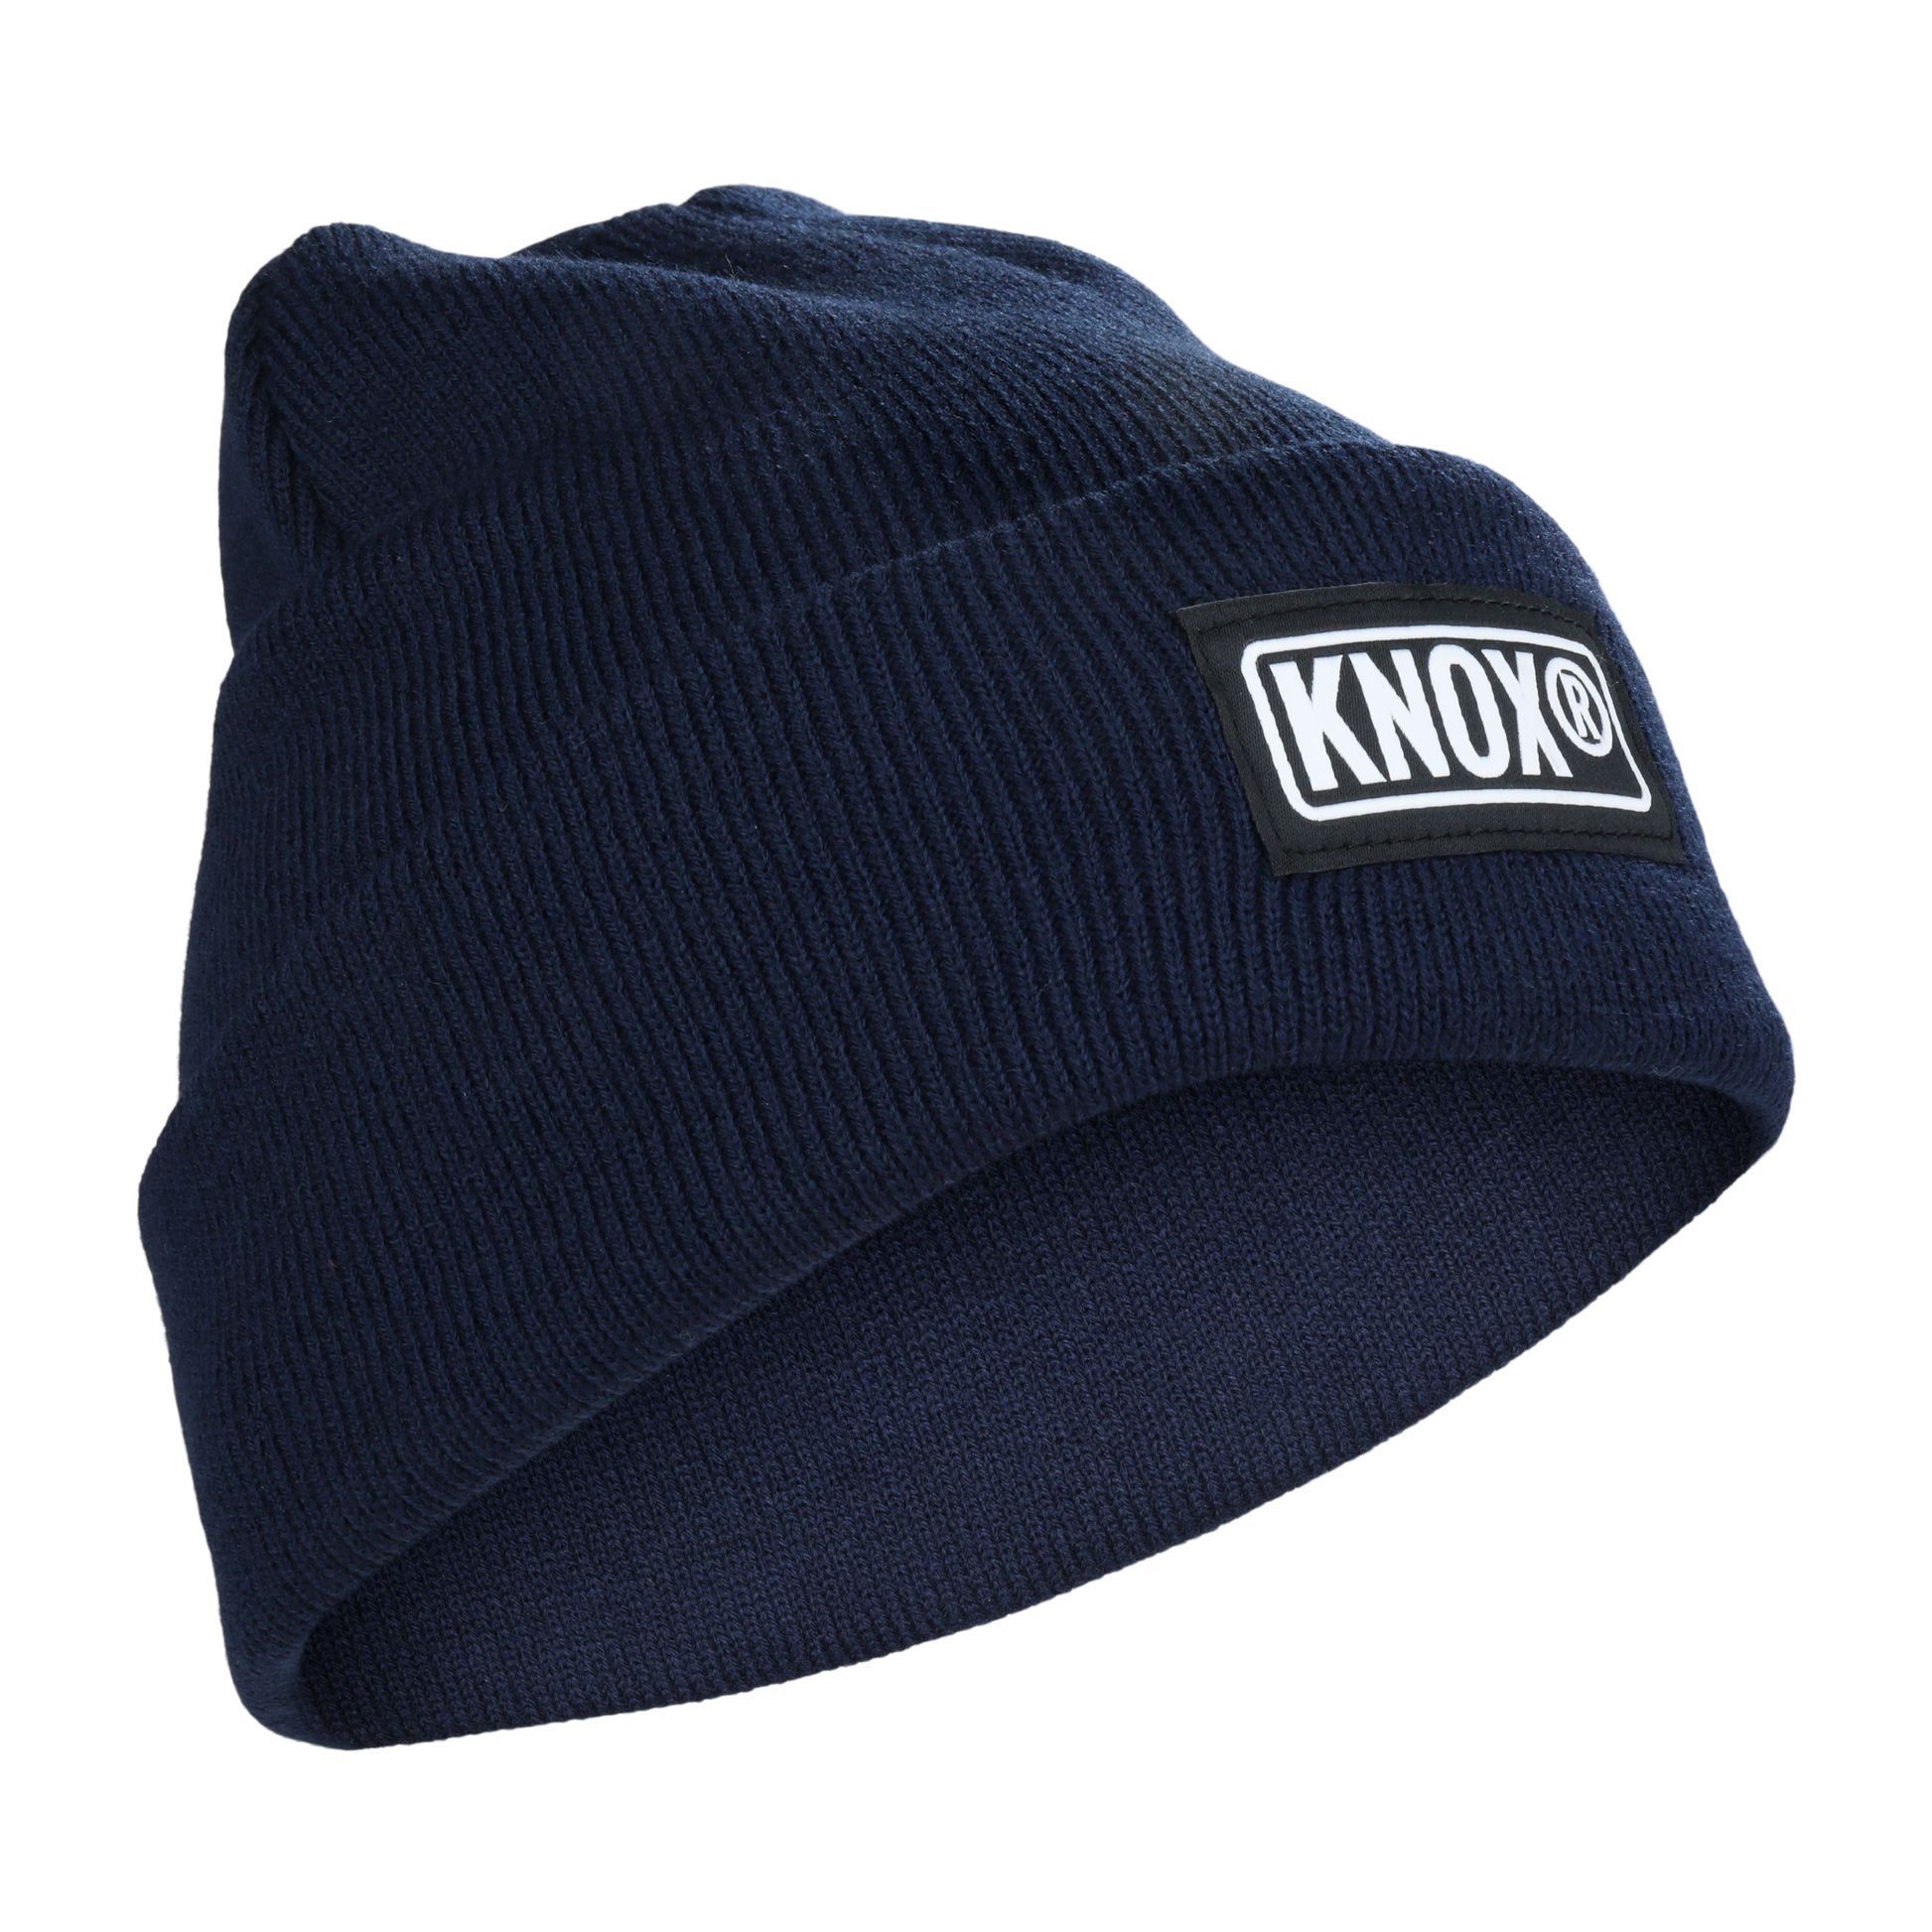 Knox Blue Cuffed Beanie - Men's Beanie | knoxfr